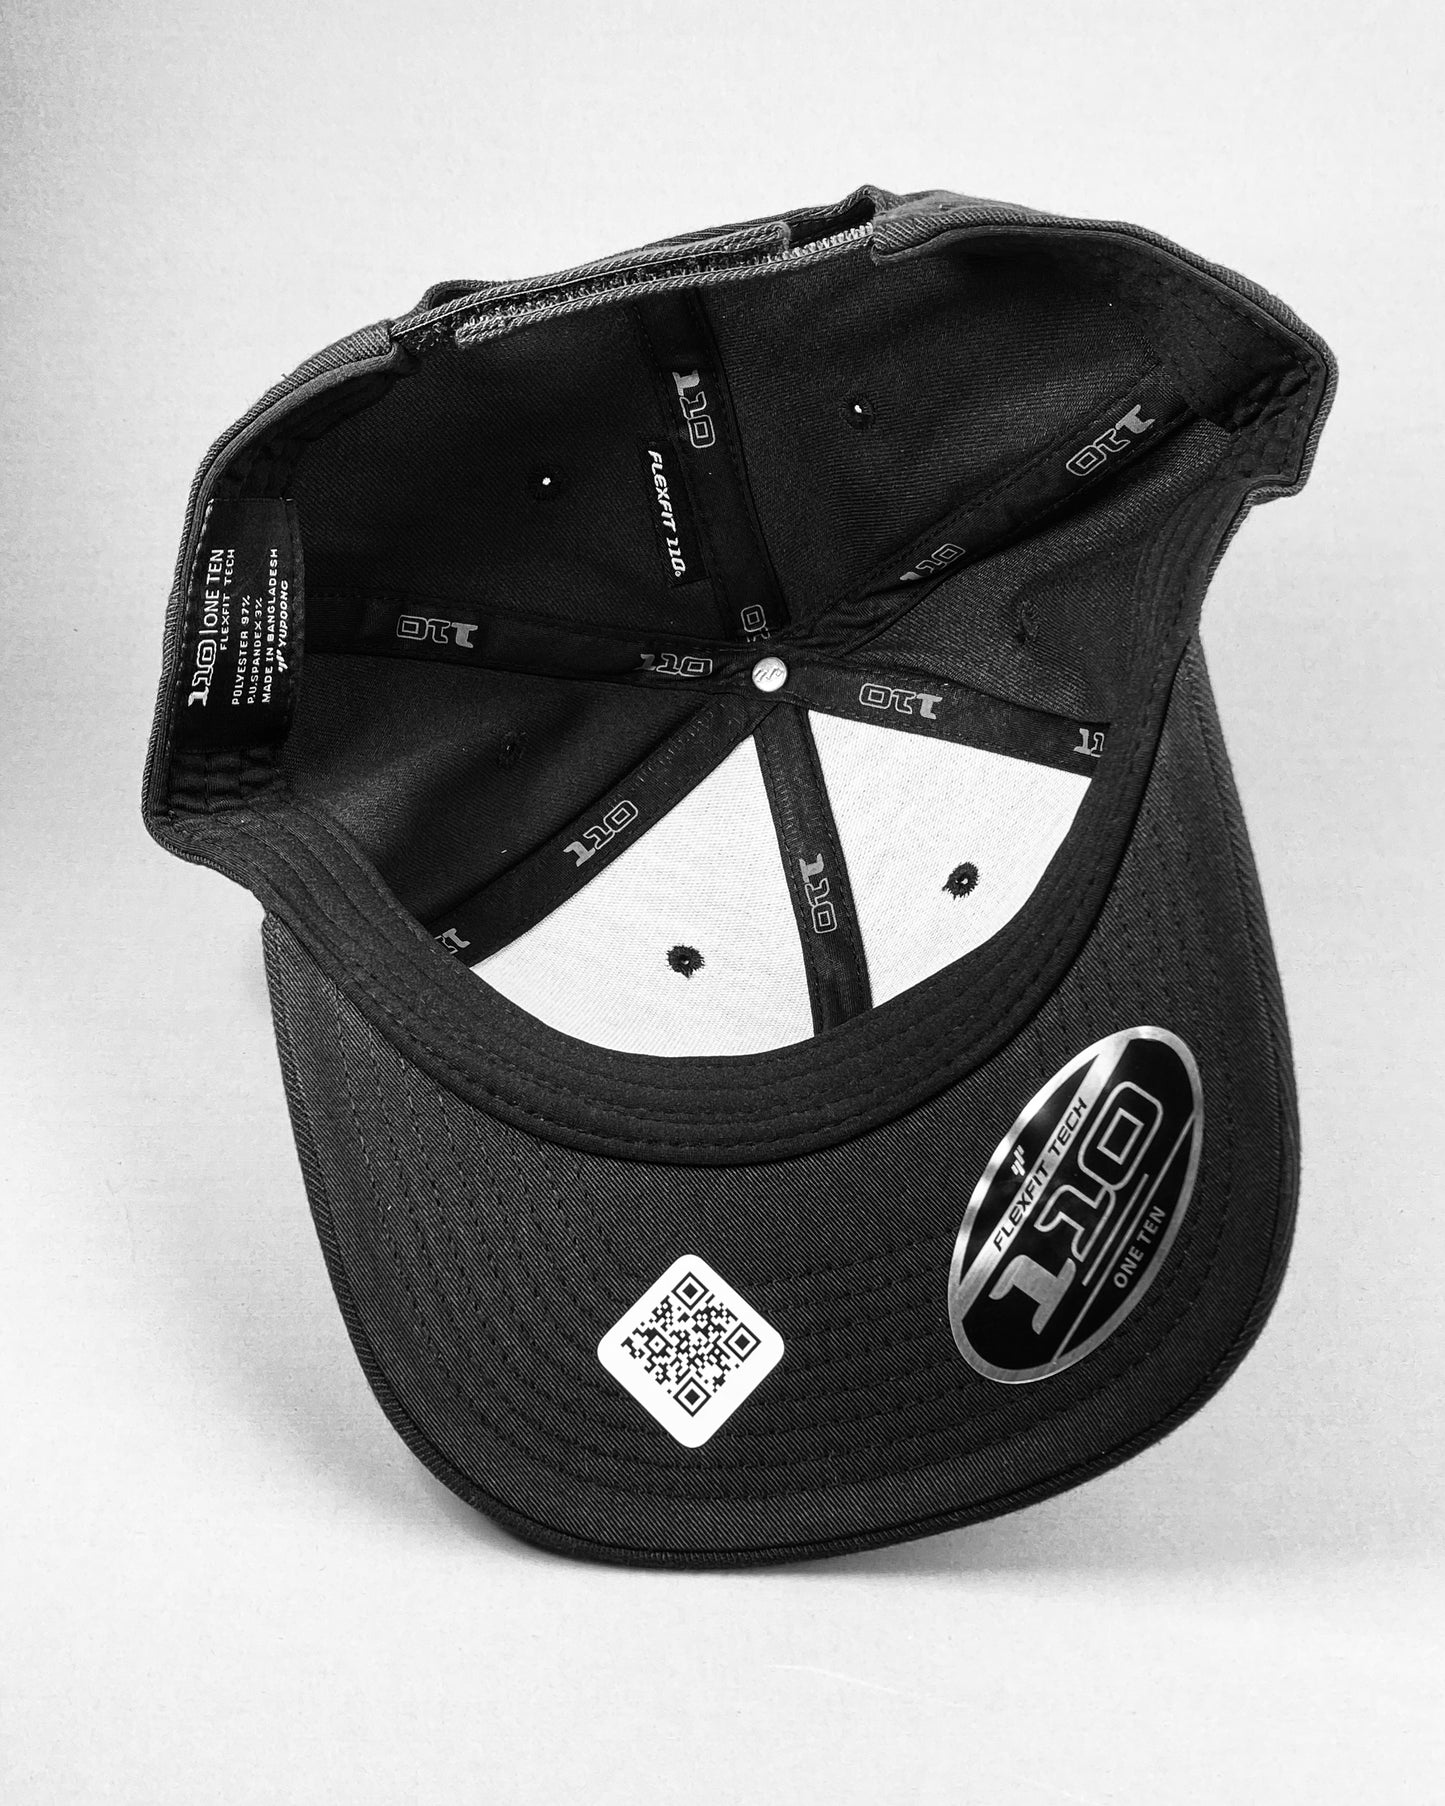 Bravo Premium hat in black with flamingo design leather patch